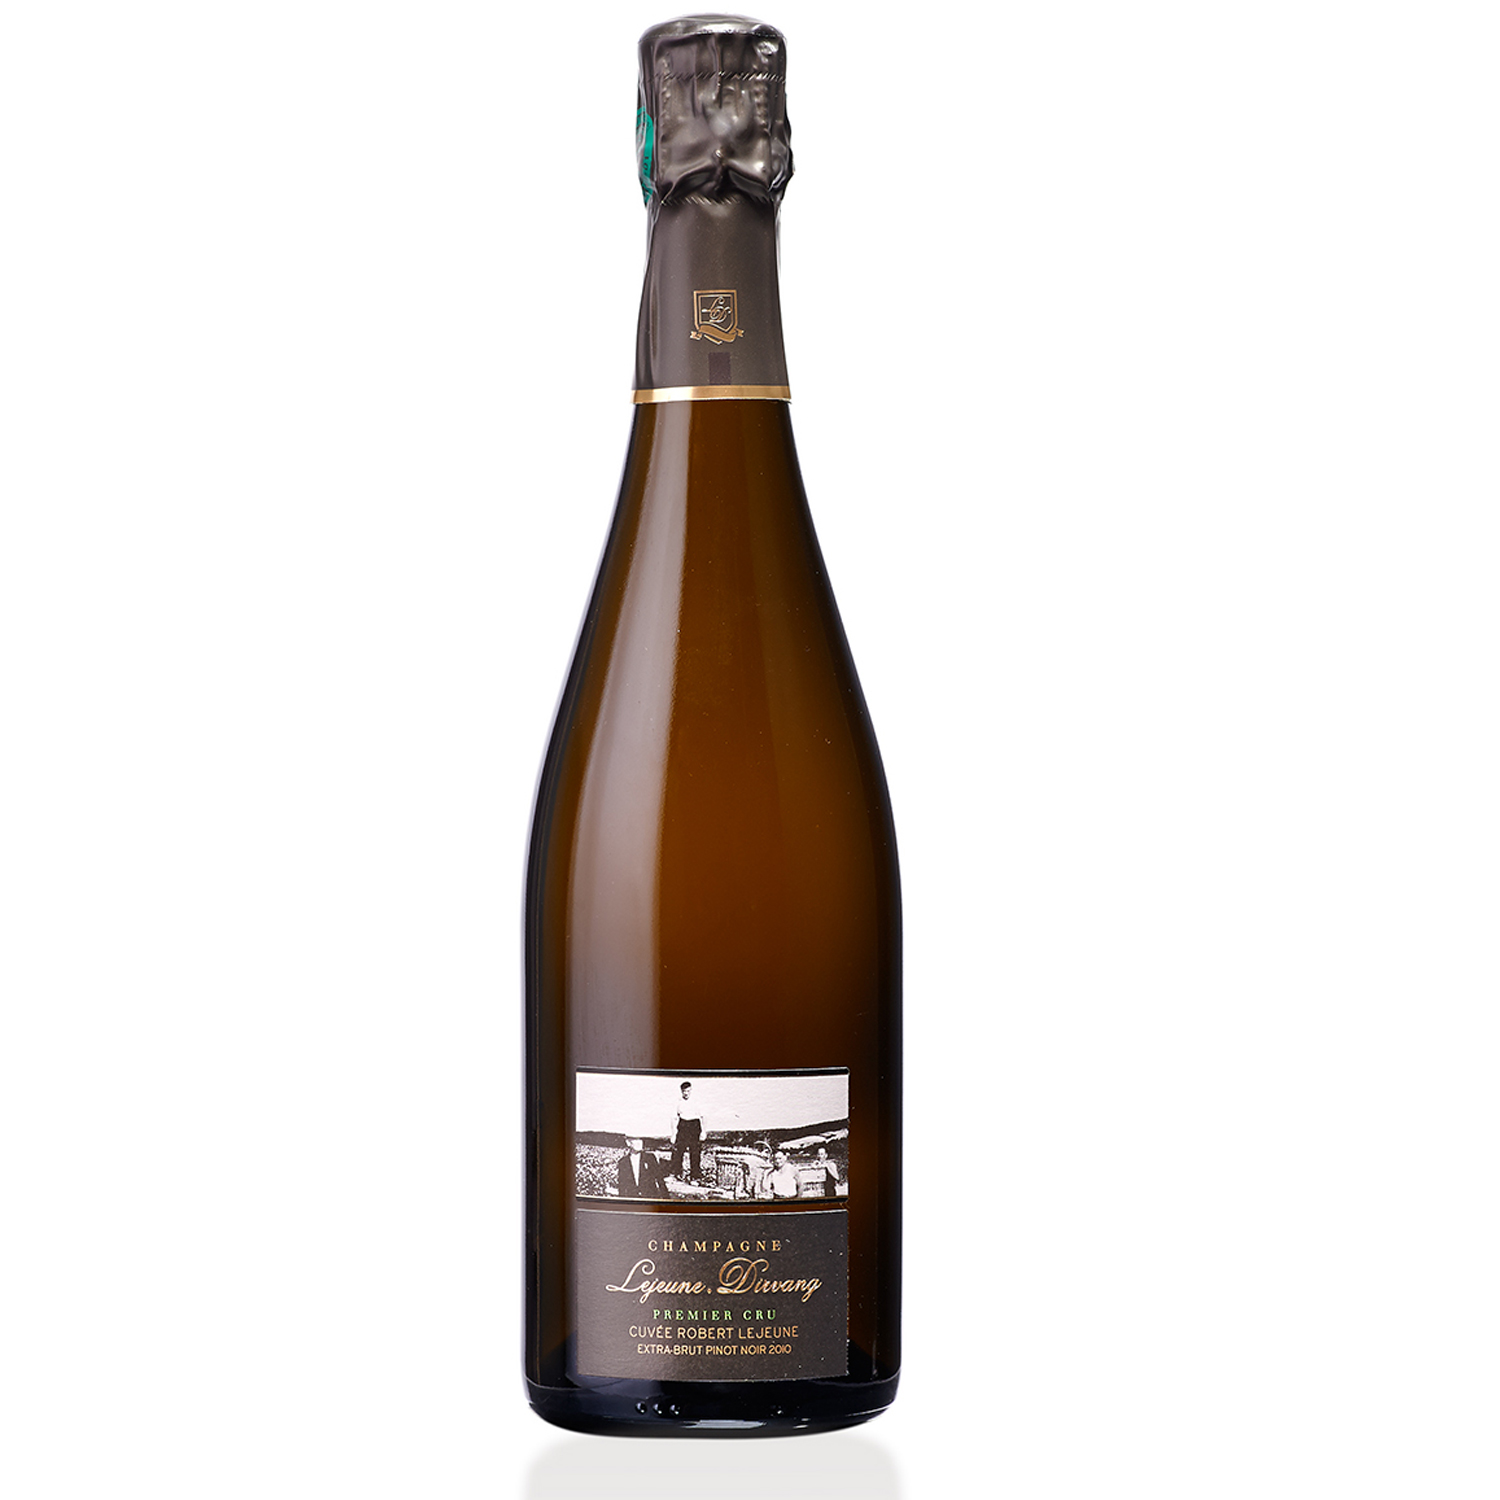 Champagne Lejeune-Dirvang: Robert Lejeune - Pinot noir 2014 - Grand Cru